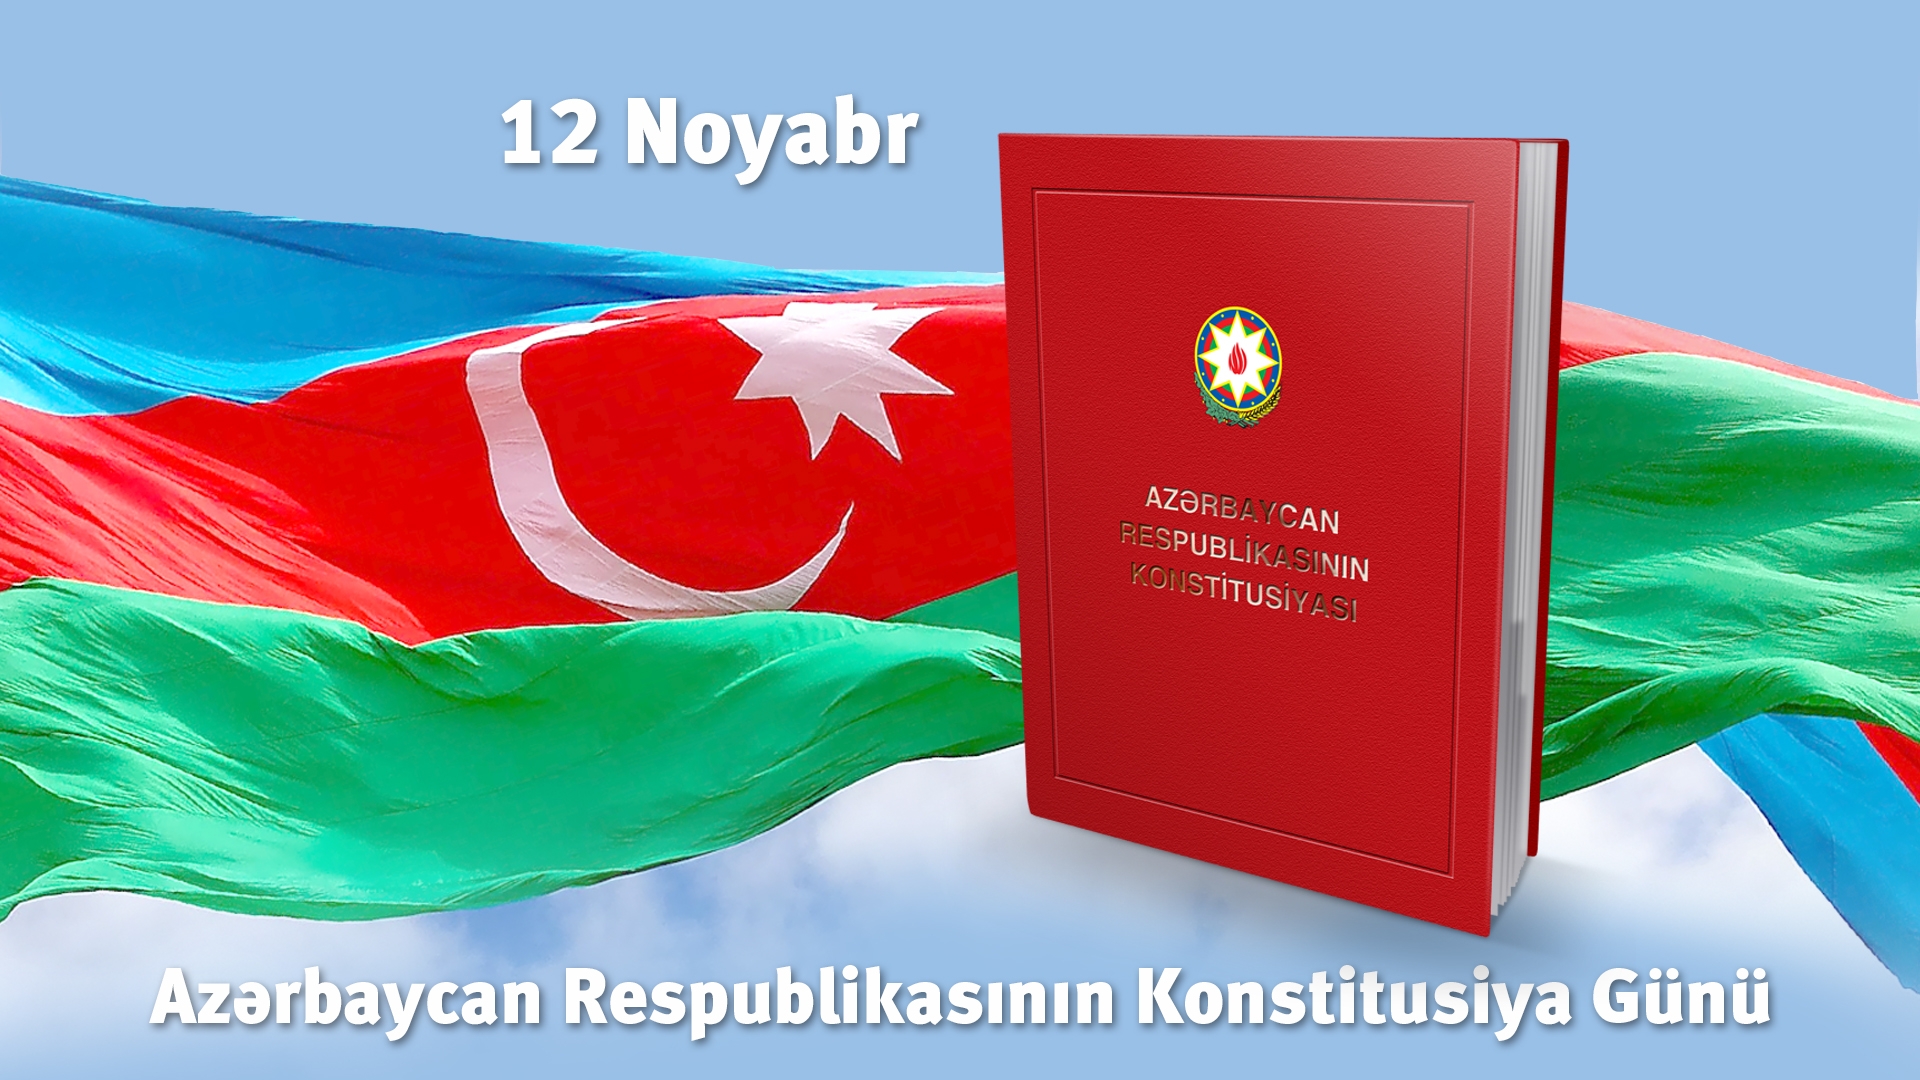 12 Noyabr - Azərbaycan Respublikasının Konstitusiya Günüdür.